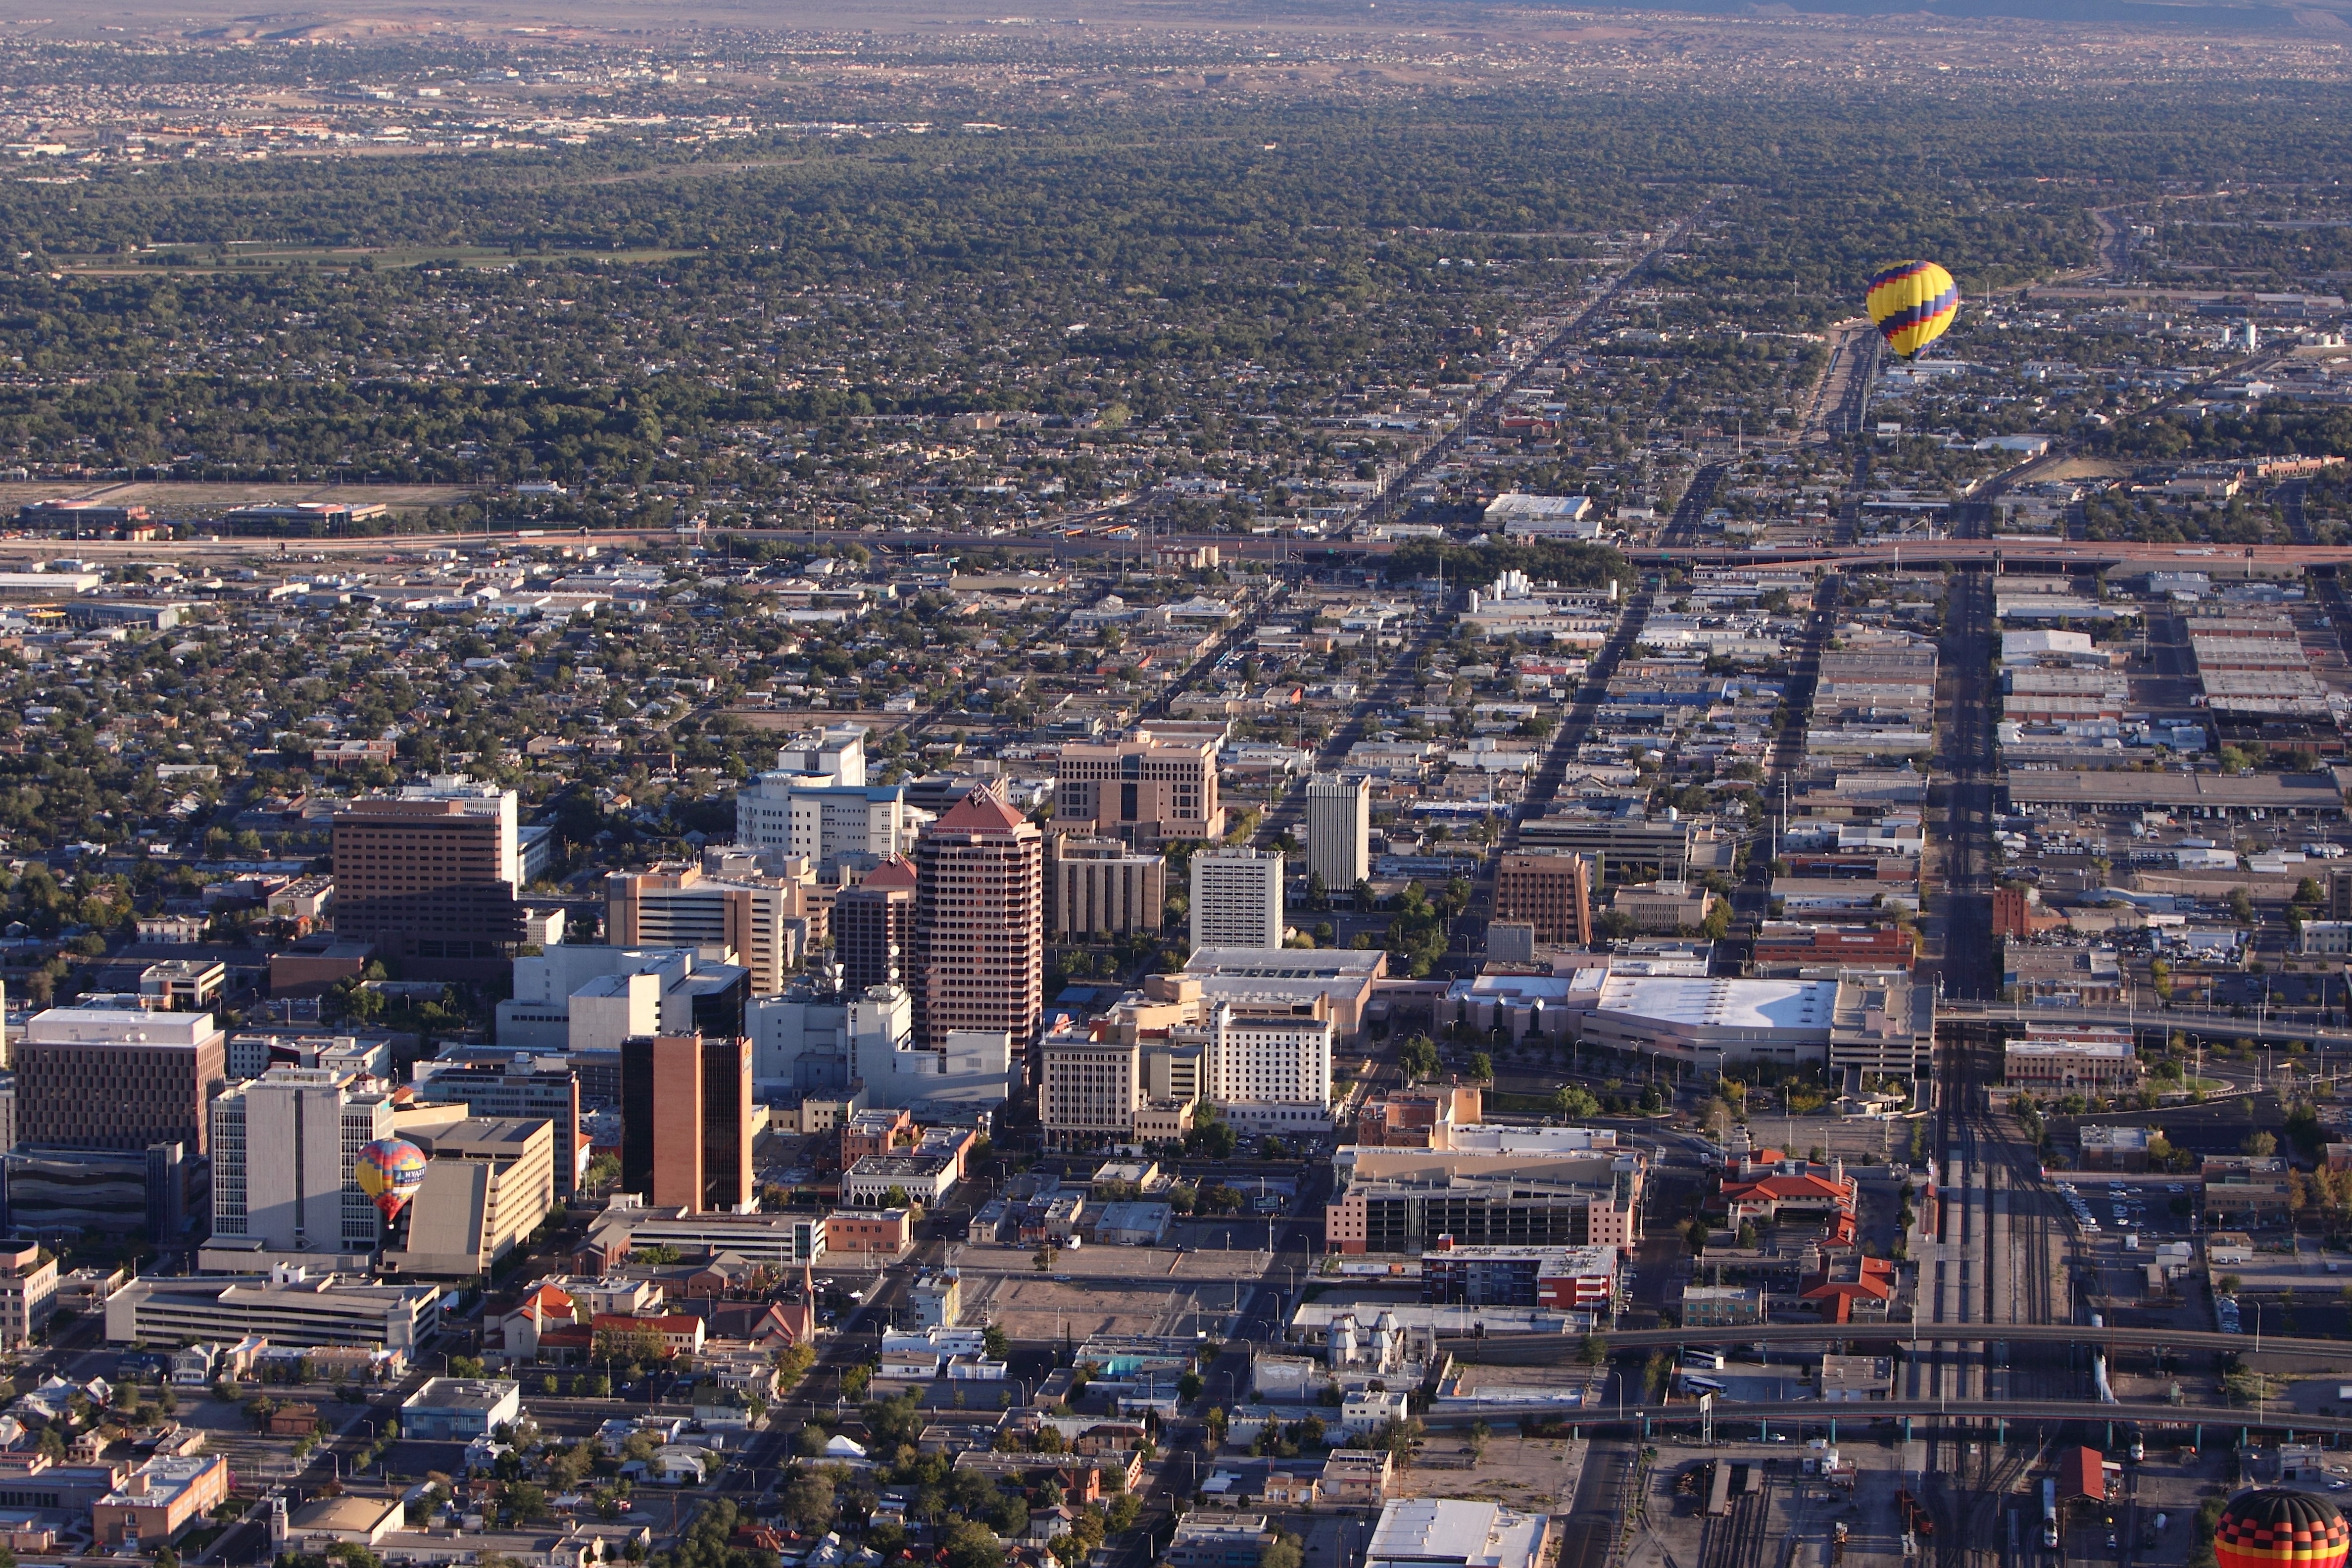 Skyline view of Albuquerque, NM.